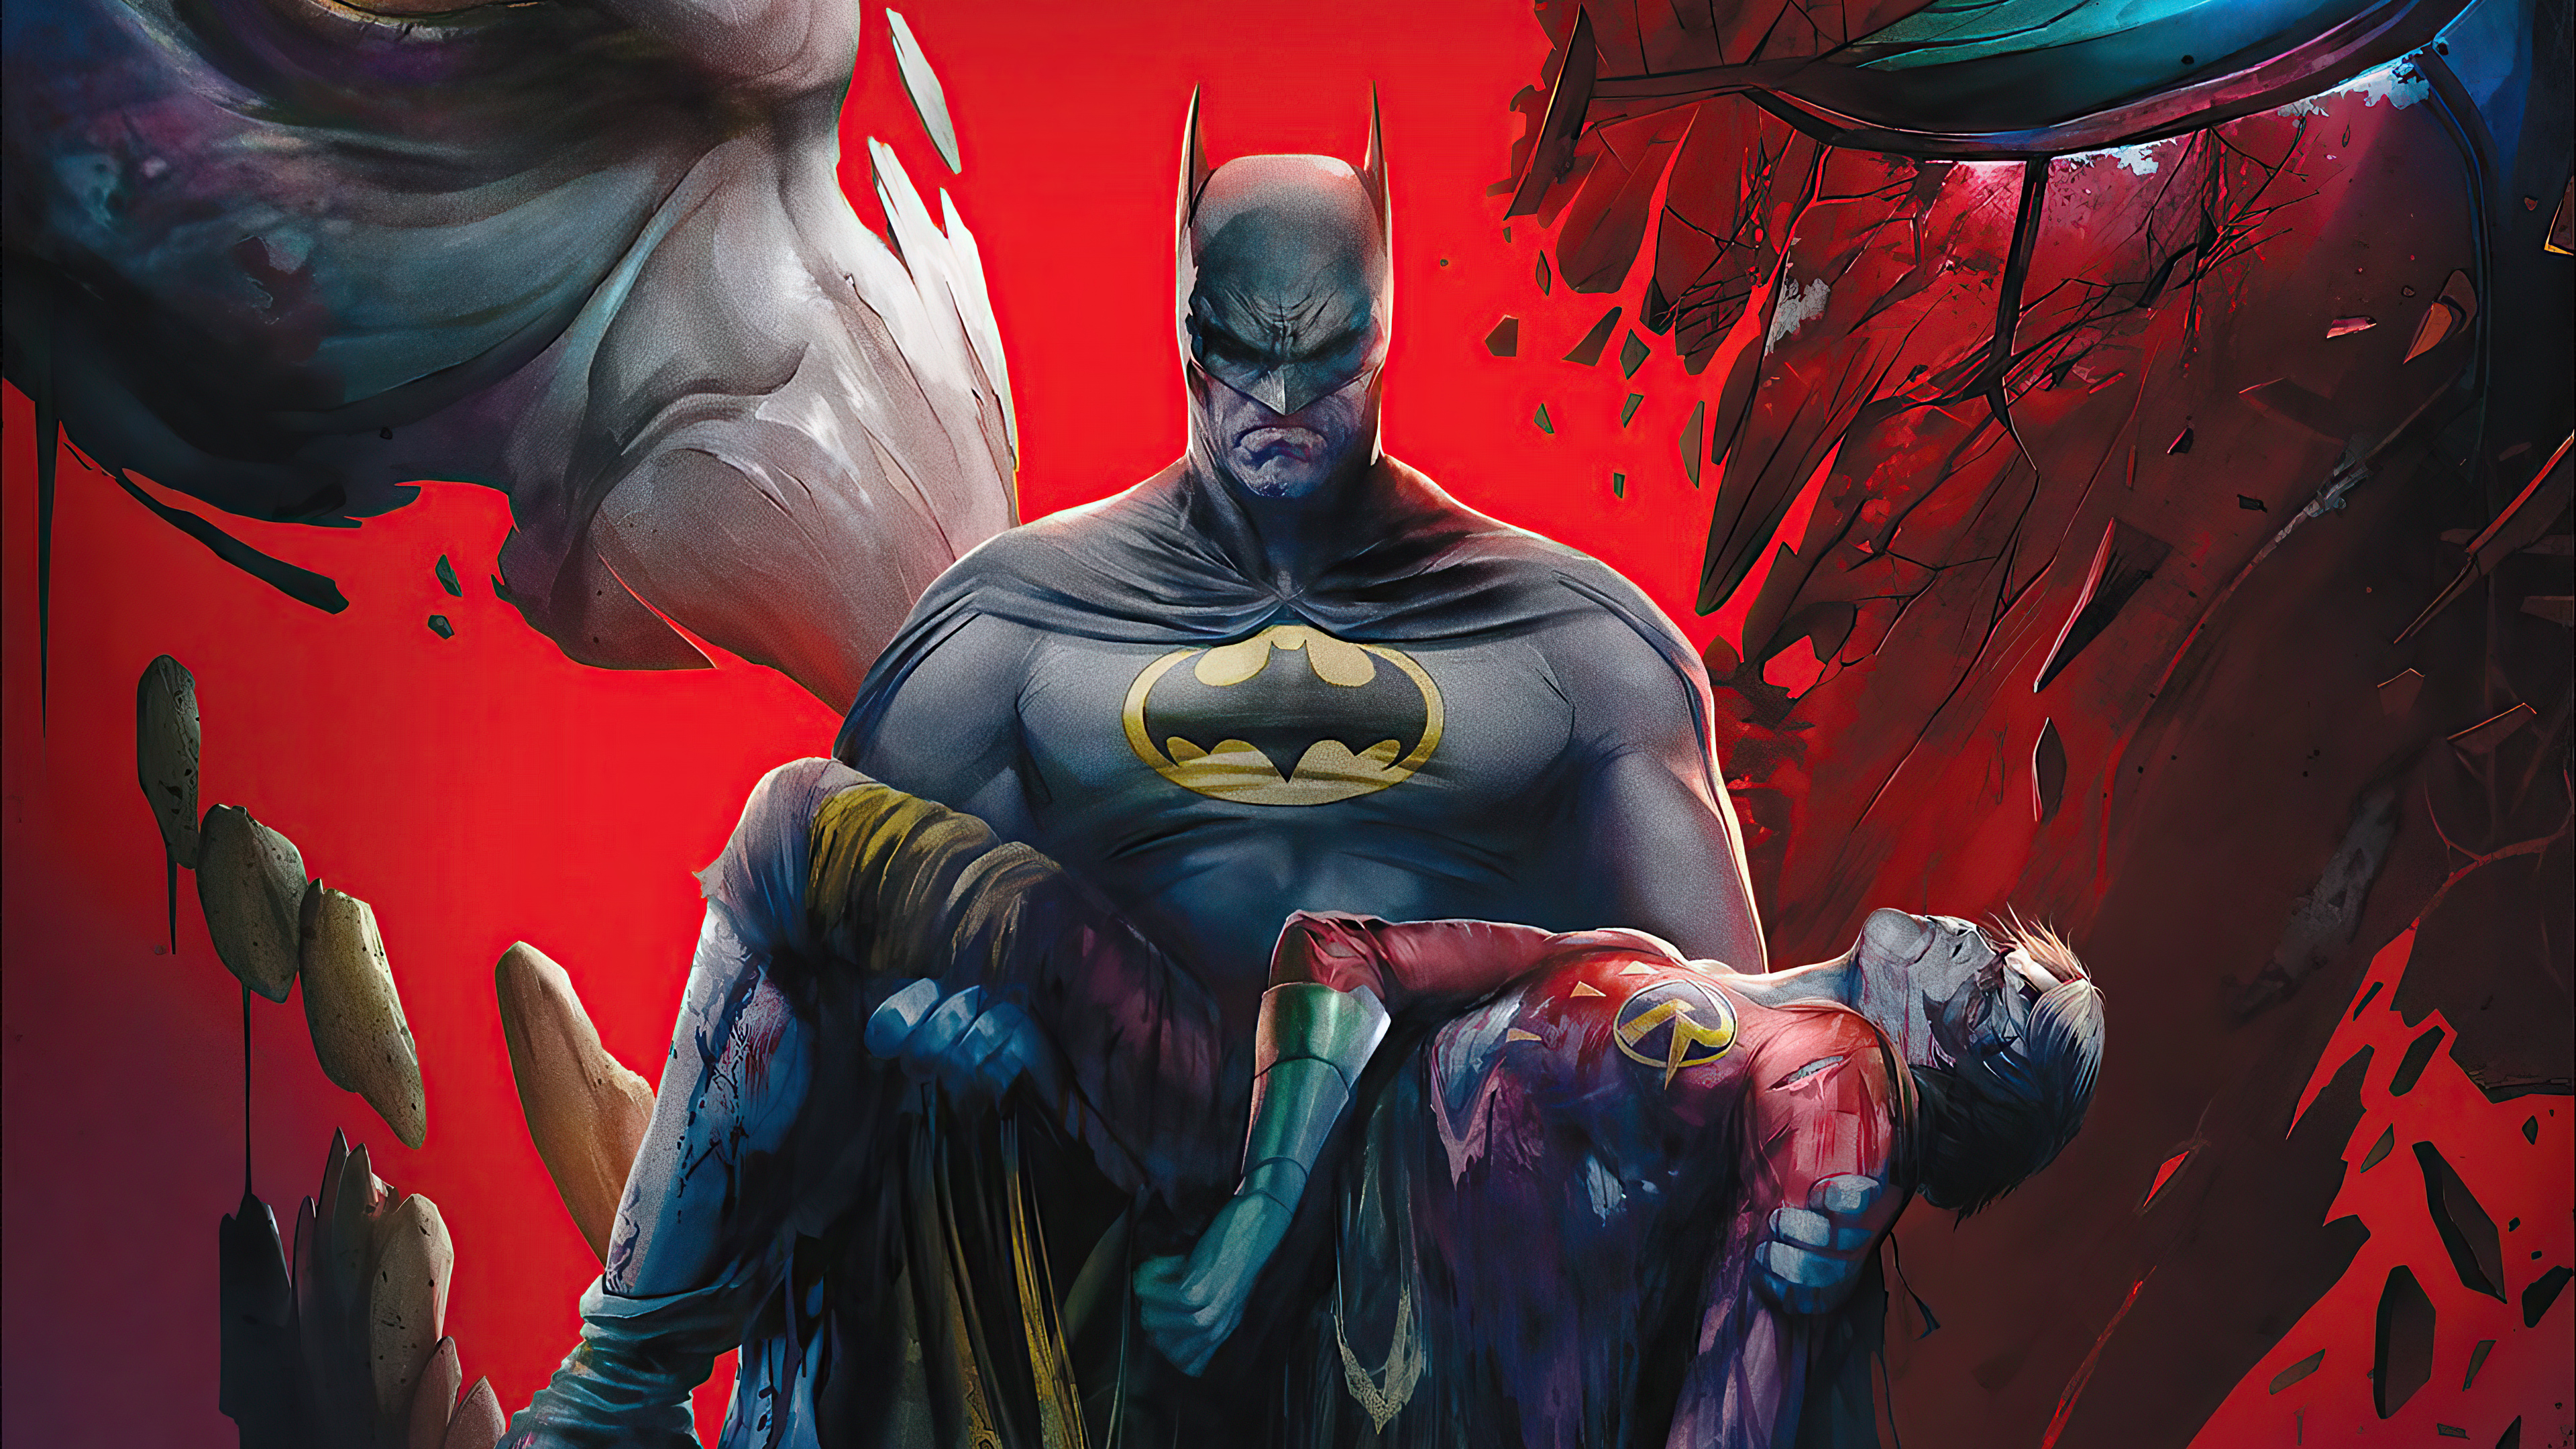 Meilleurs fonds d'écran Batman : La Mort Dans La Famille pour l'écran du téléphone